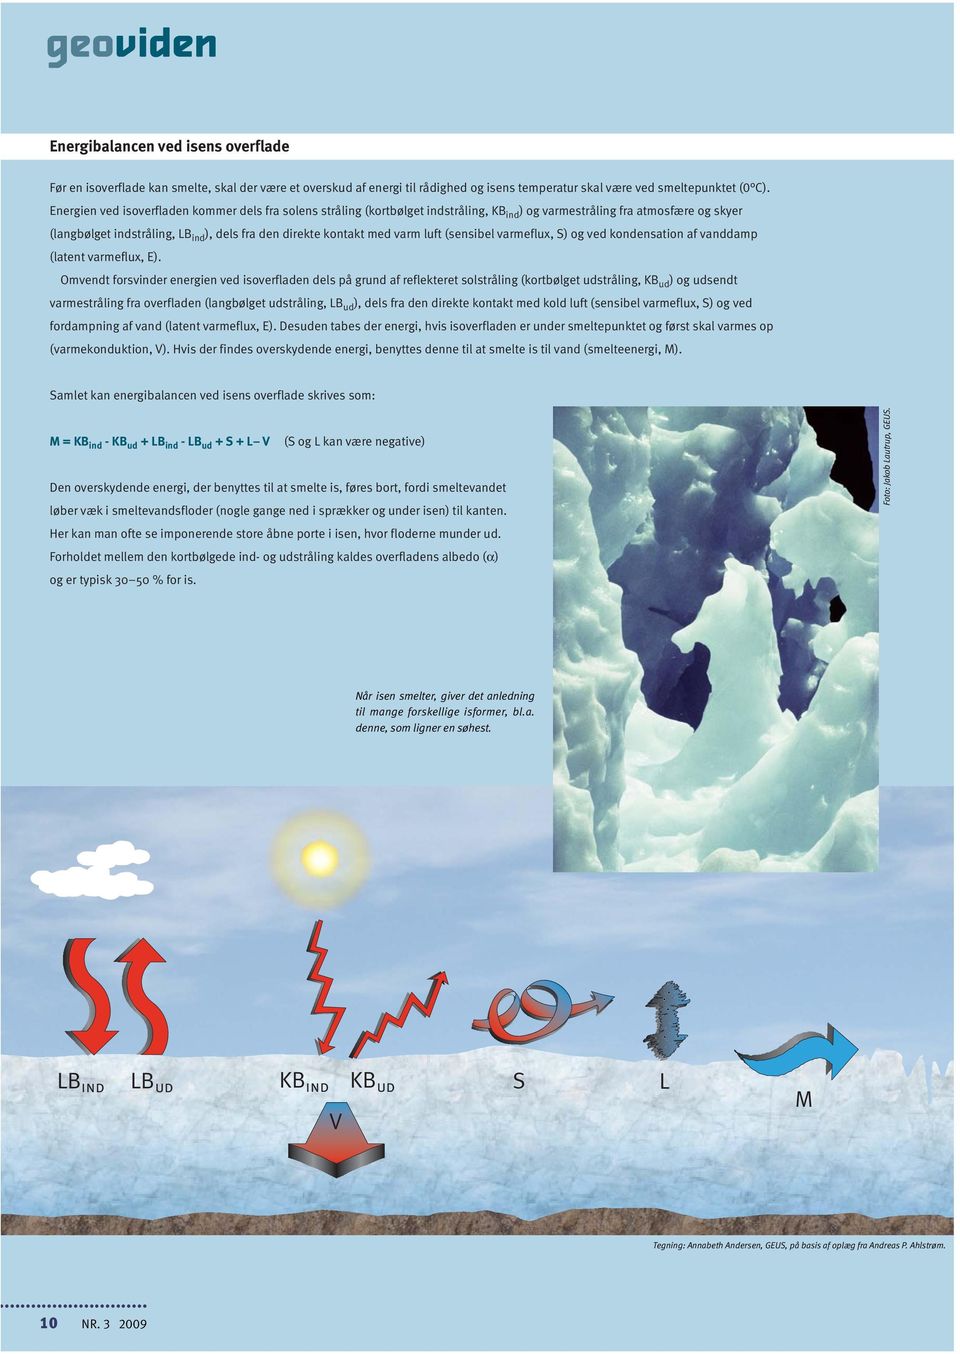 varm luft (sensibel varmeflux, S) og ved kondensation af vanddamp (latent varmeflux, E).